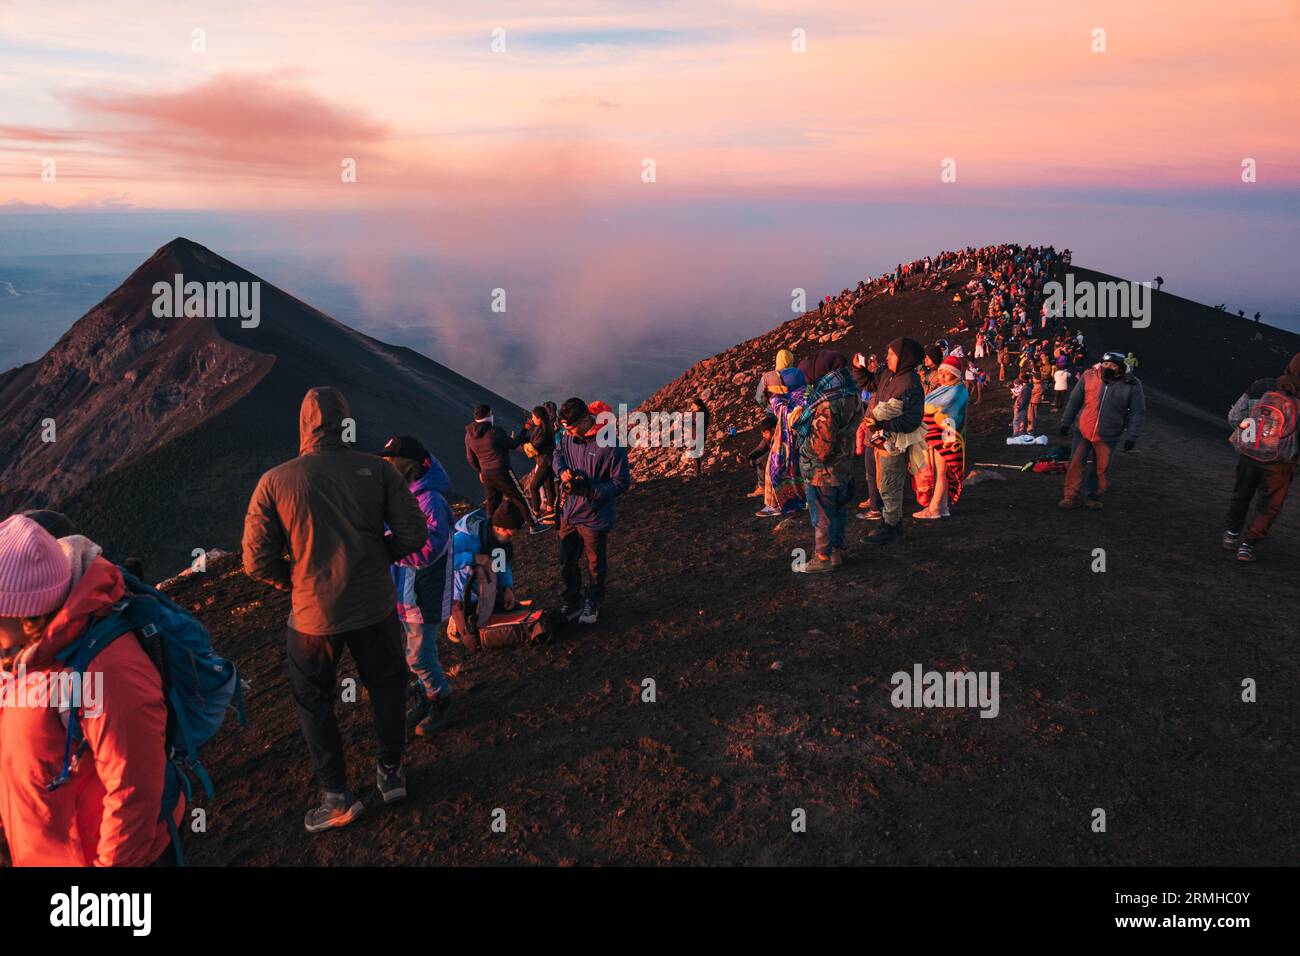 Dozzine di turisti affollano la cima del vulcano Acatenango dormiente in Guatemala per osservare l'adiacente e attivo vulcano Fuego eruttare, all'alba Foto Stock